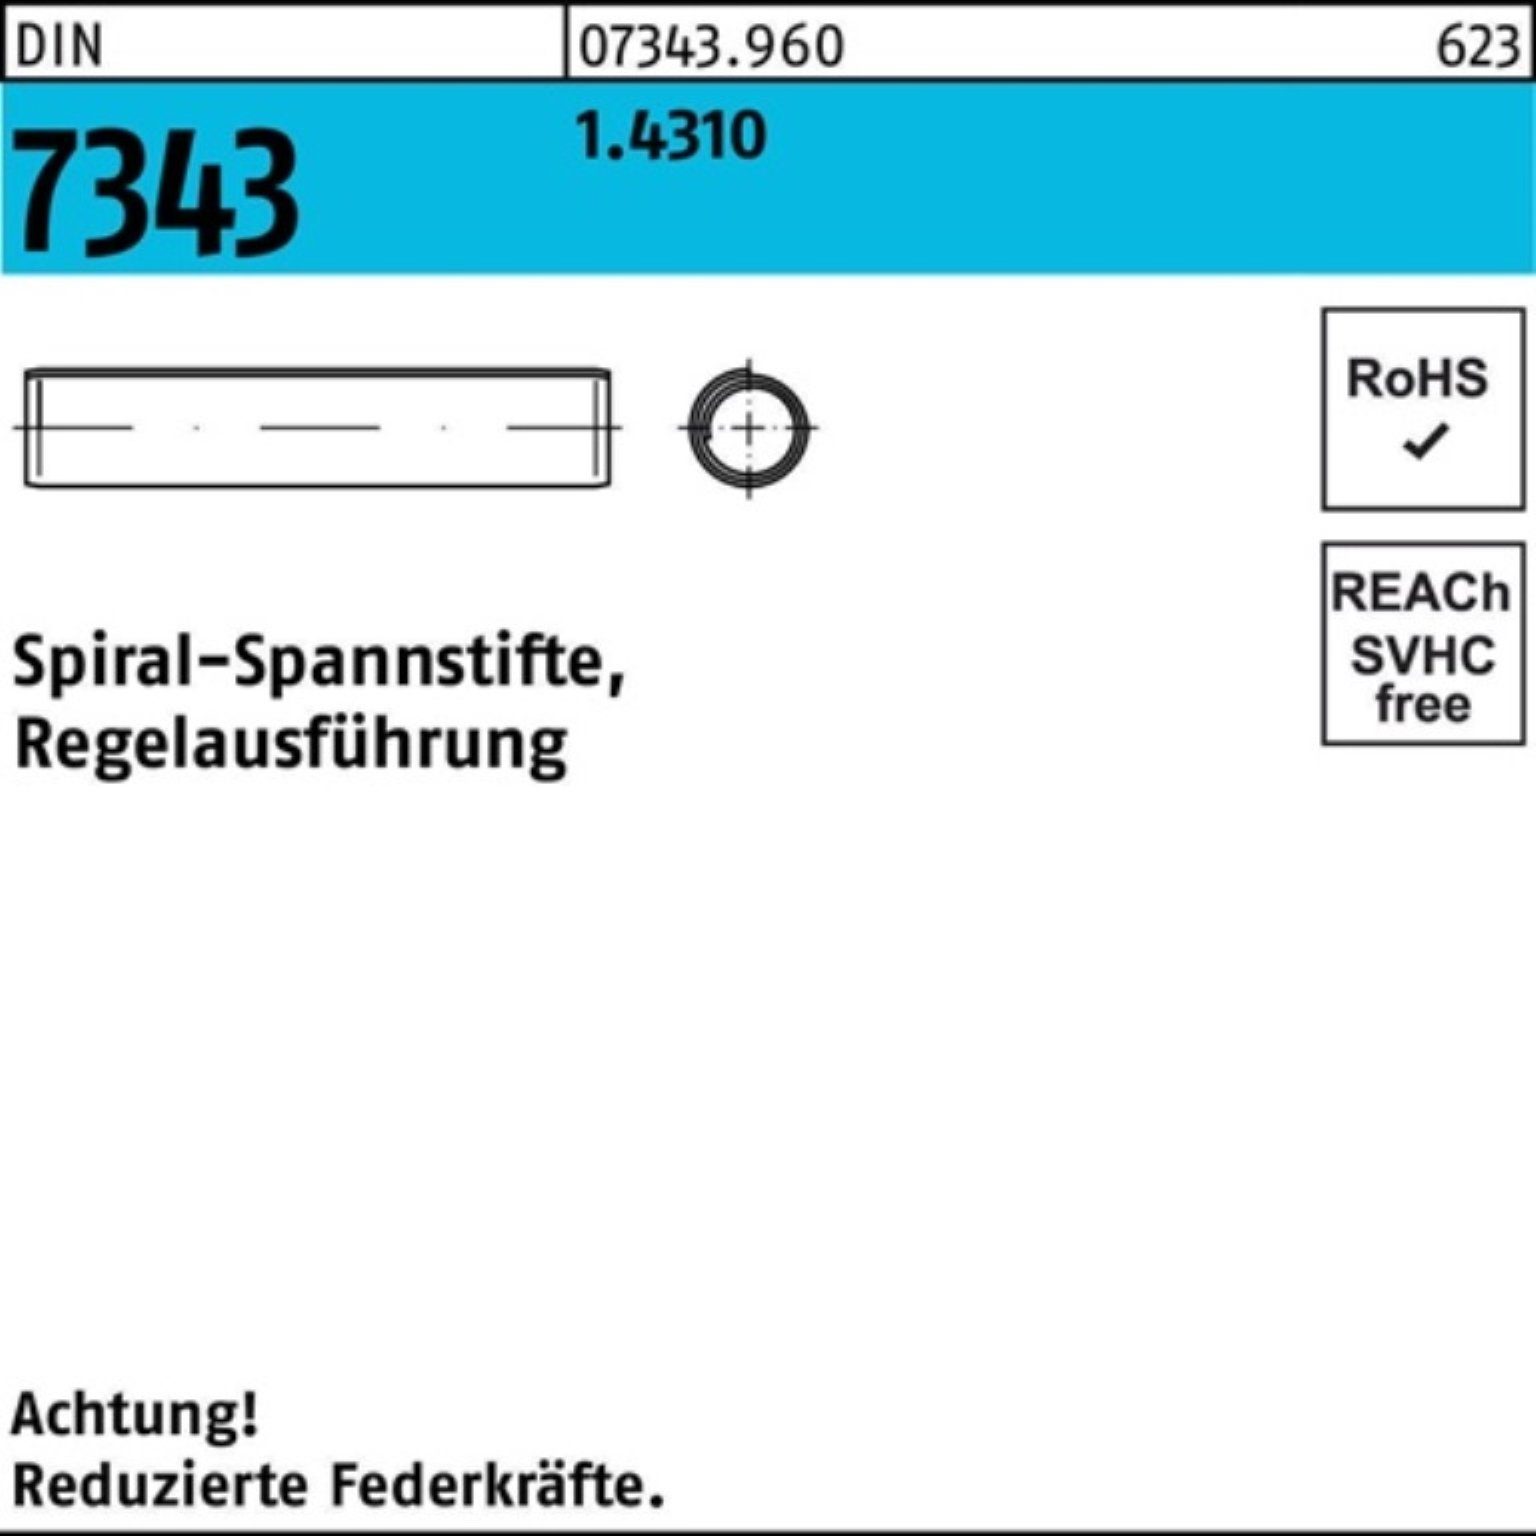 Reyher Spannstift 1000er Pack Regelaus 2,5x 7343/ISO 16 8750 DIN 1.4310 Spiralspannstift